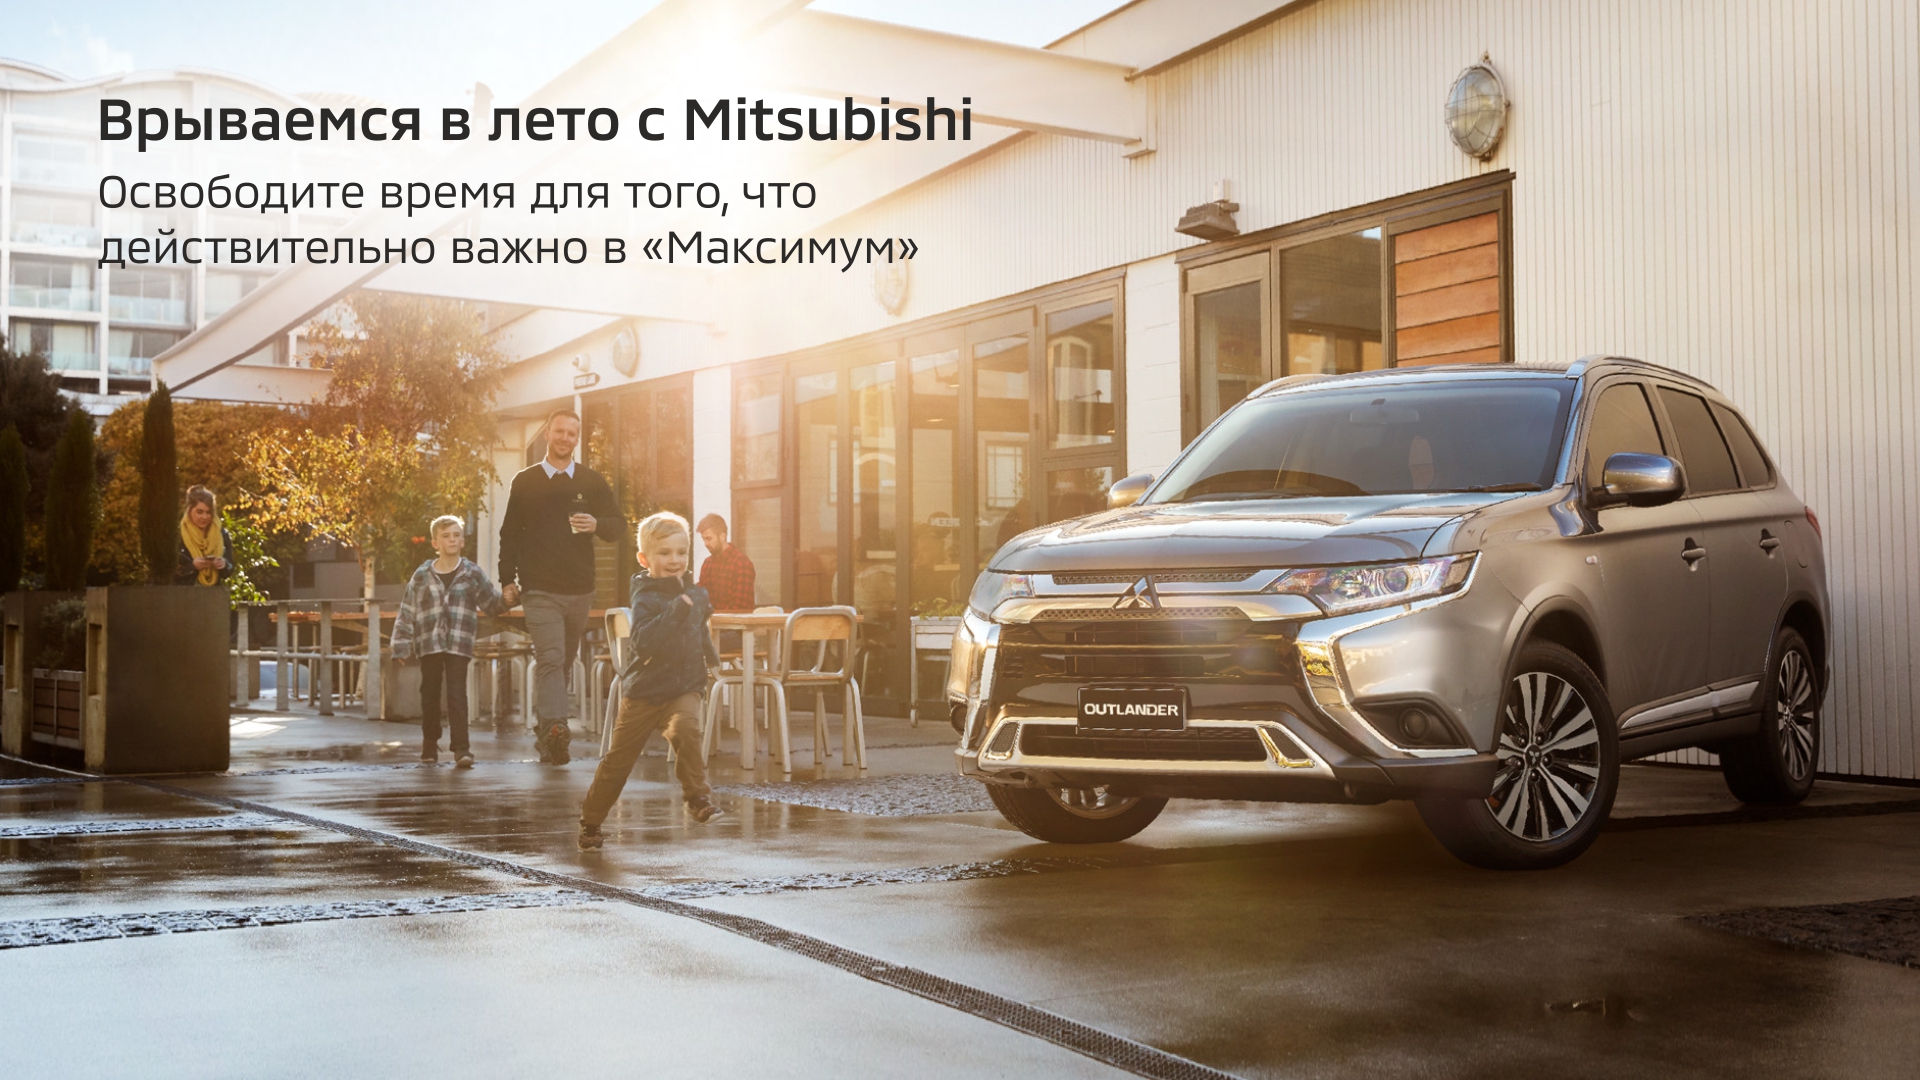 Режим работы Mitsubishi Максимум с 8 июня